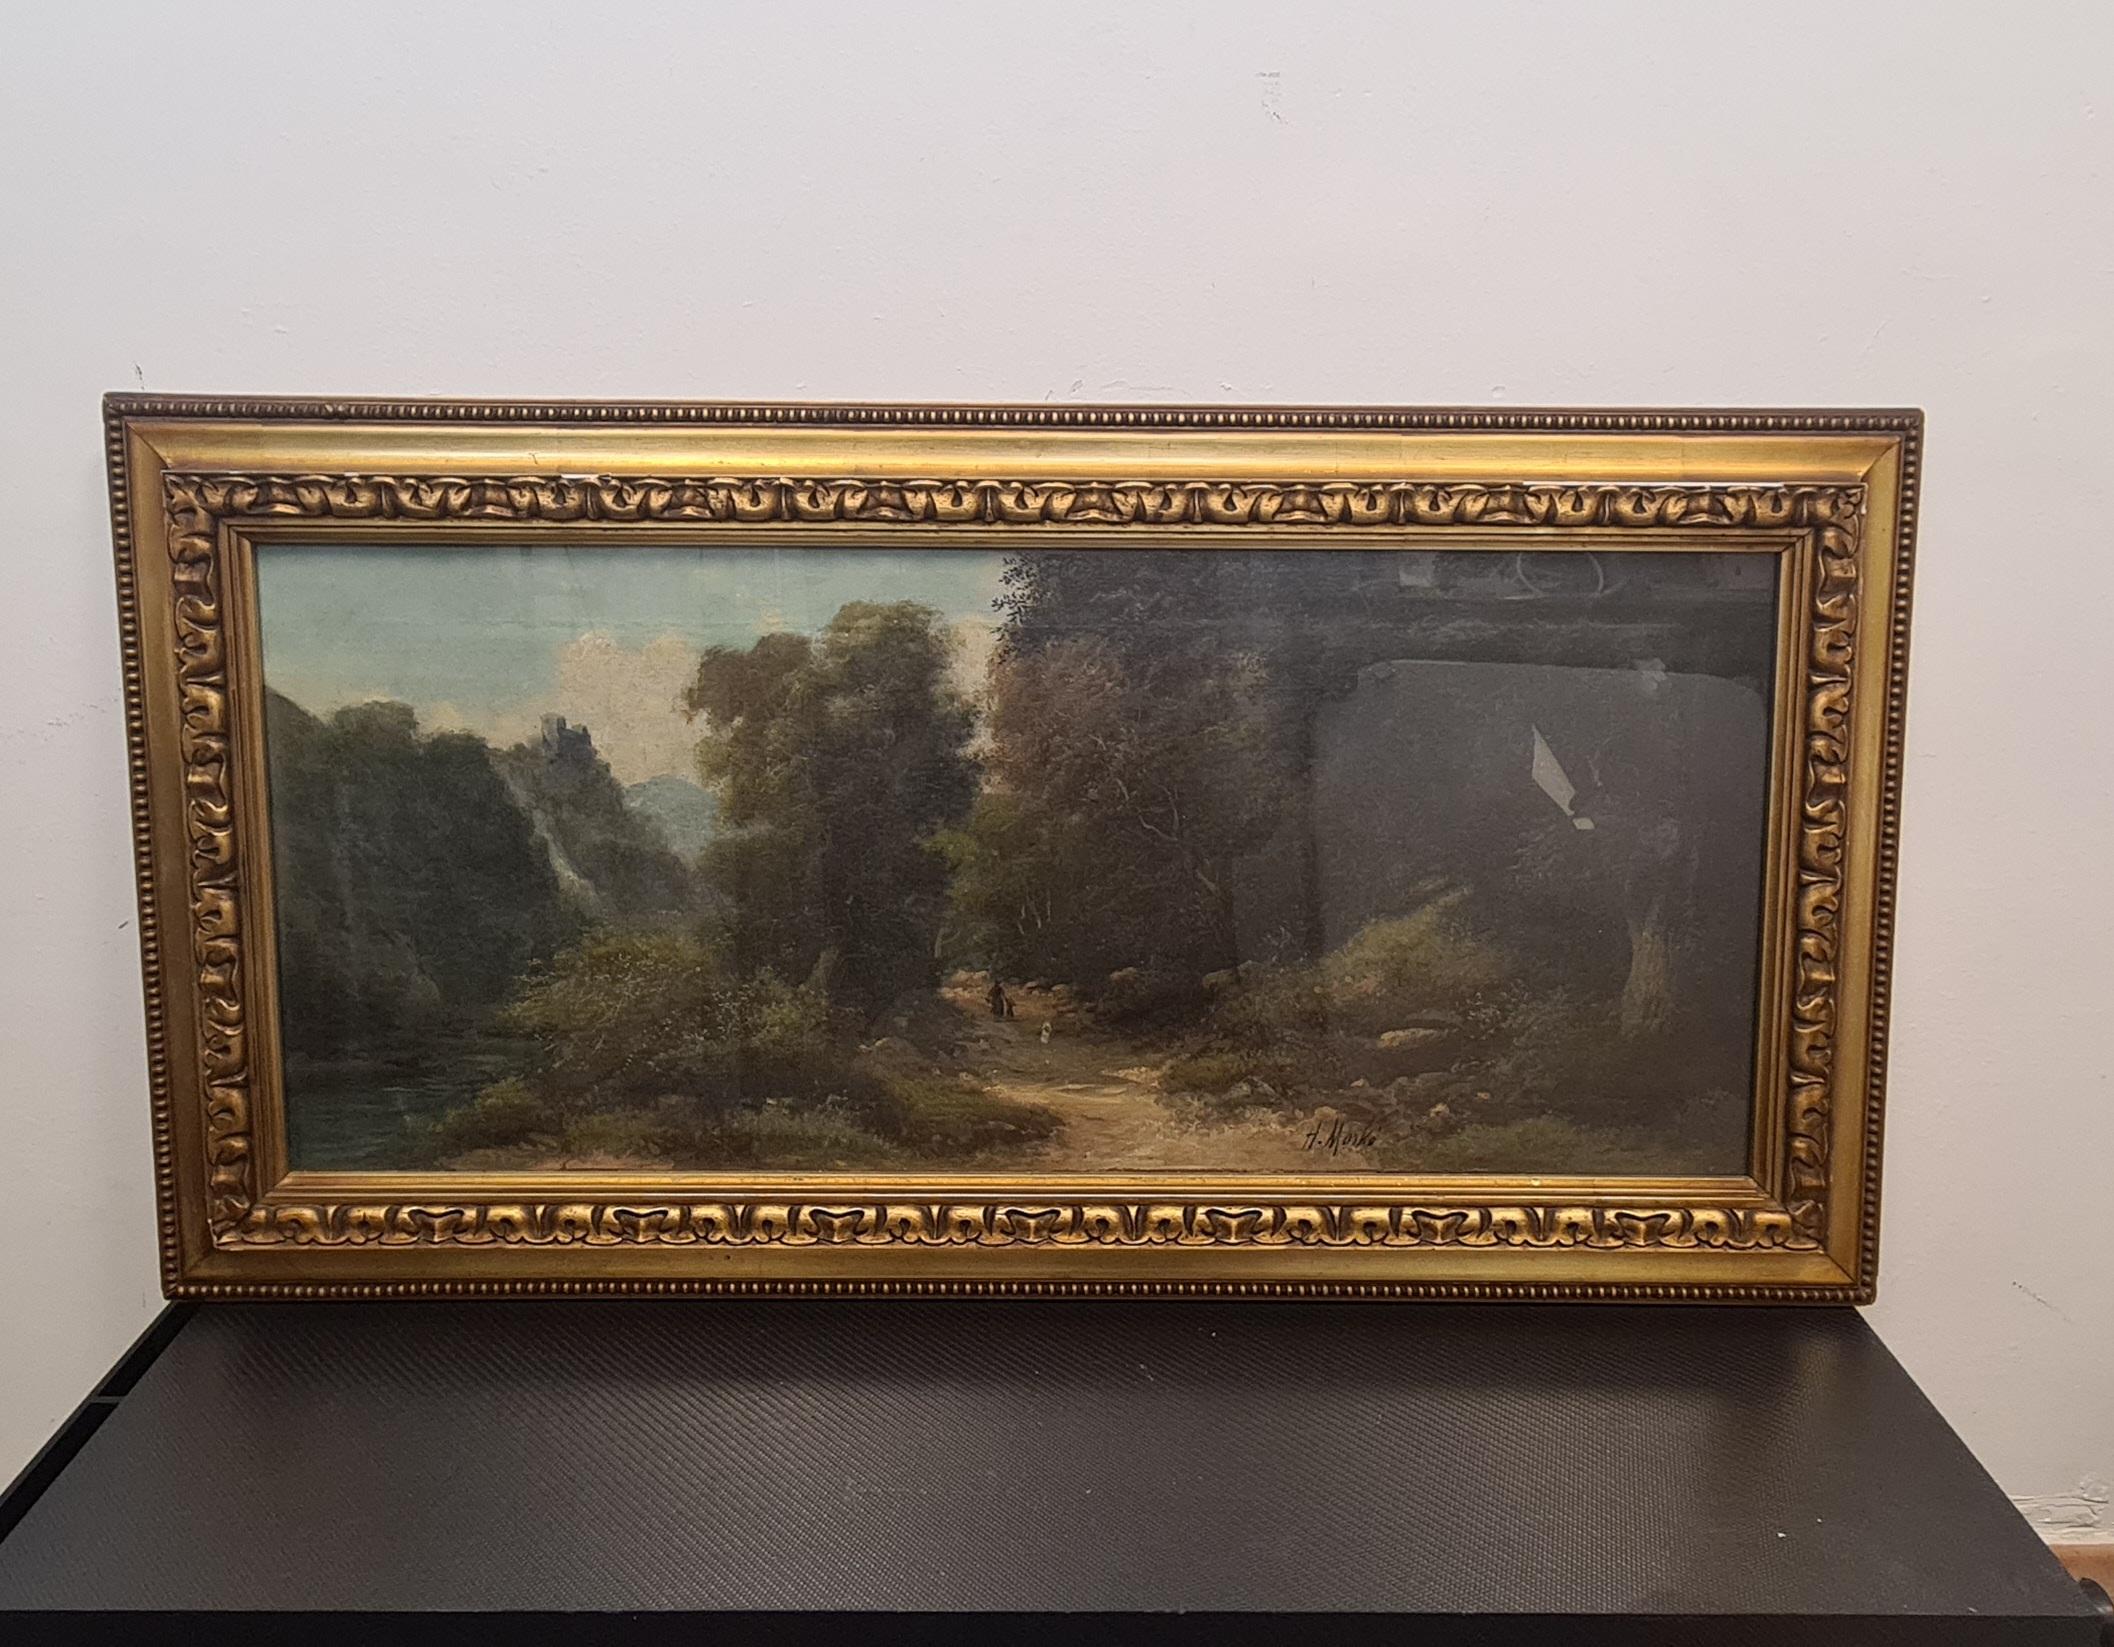 Gemäldepaar des Landschaftsmalers Henry Markò.

Nr. 2 Ölgemälde auf Leinwand, die Landschaftsszenen darstellen.

Eine davon zeigt einen bewaldeten Feldweg, der von einer Figur in der Ferne überquert wird. Im Hintergrund links ist ein Wasserfall zu